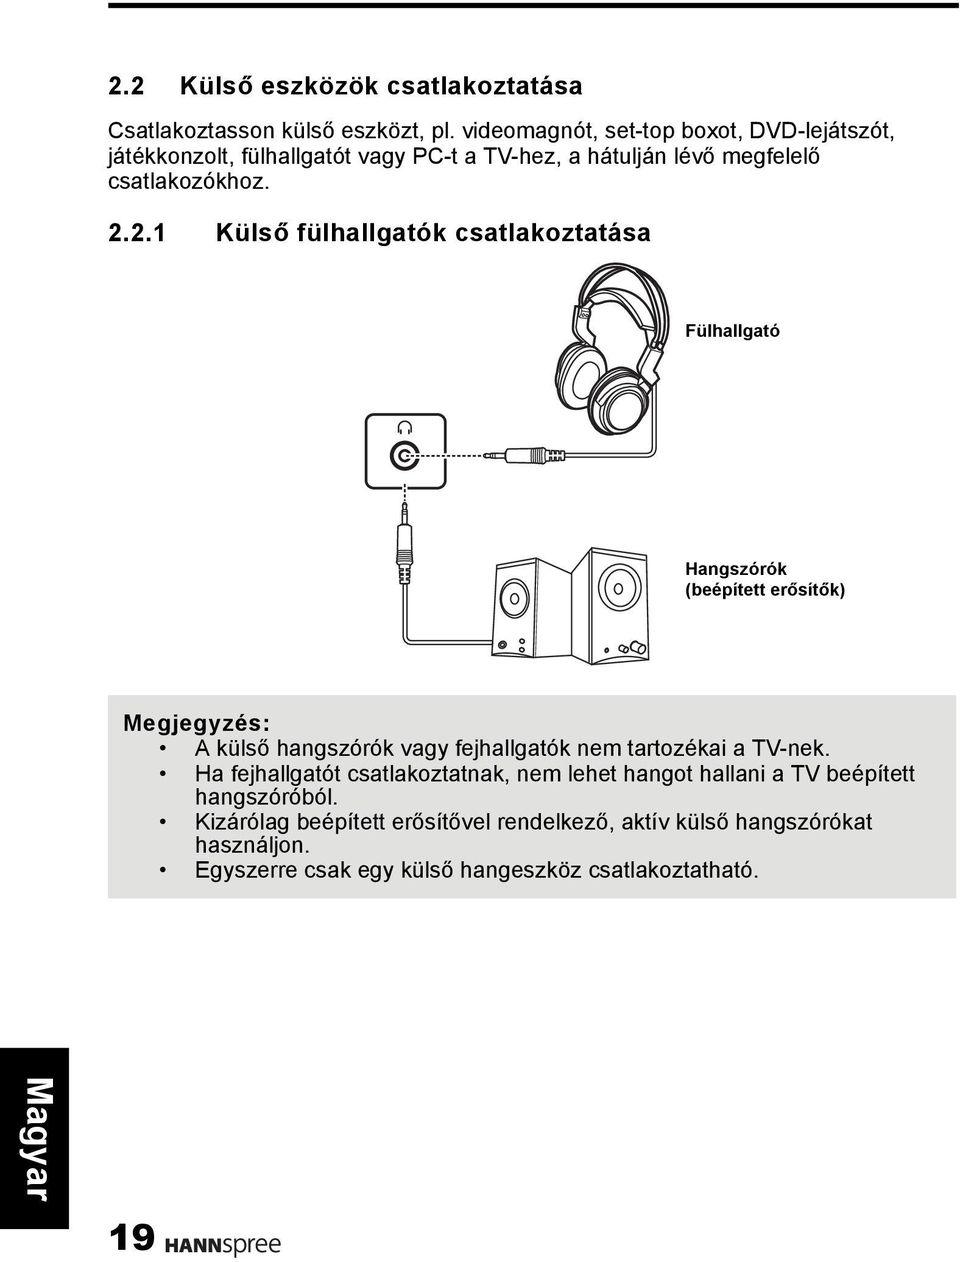 2.1 Külső fülhallgatók csatlakoztatása Fülhallgató Hangszórók (beépített erősítők) Megjegyzés: A külső hangszórók vagy fejhallgatók nem